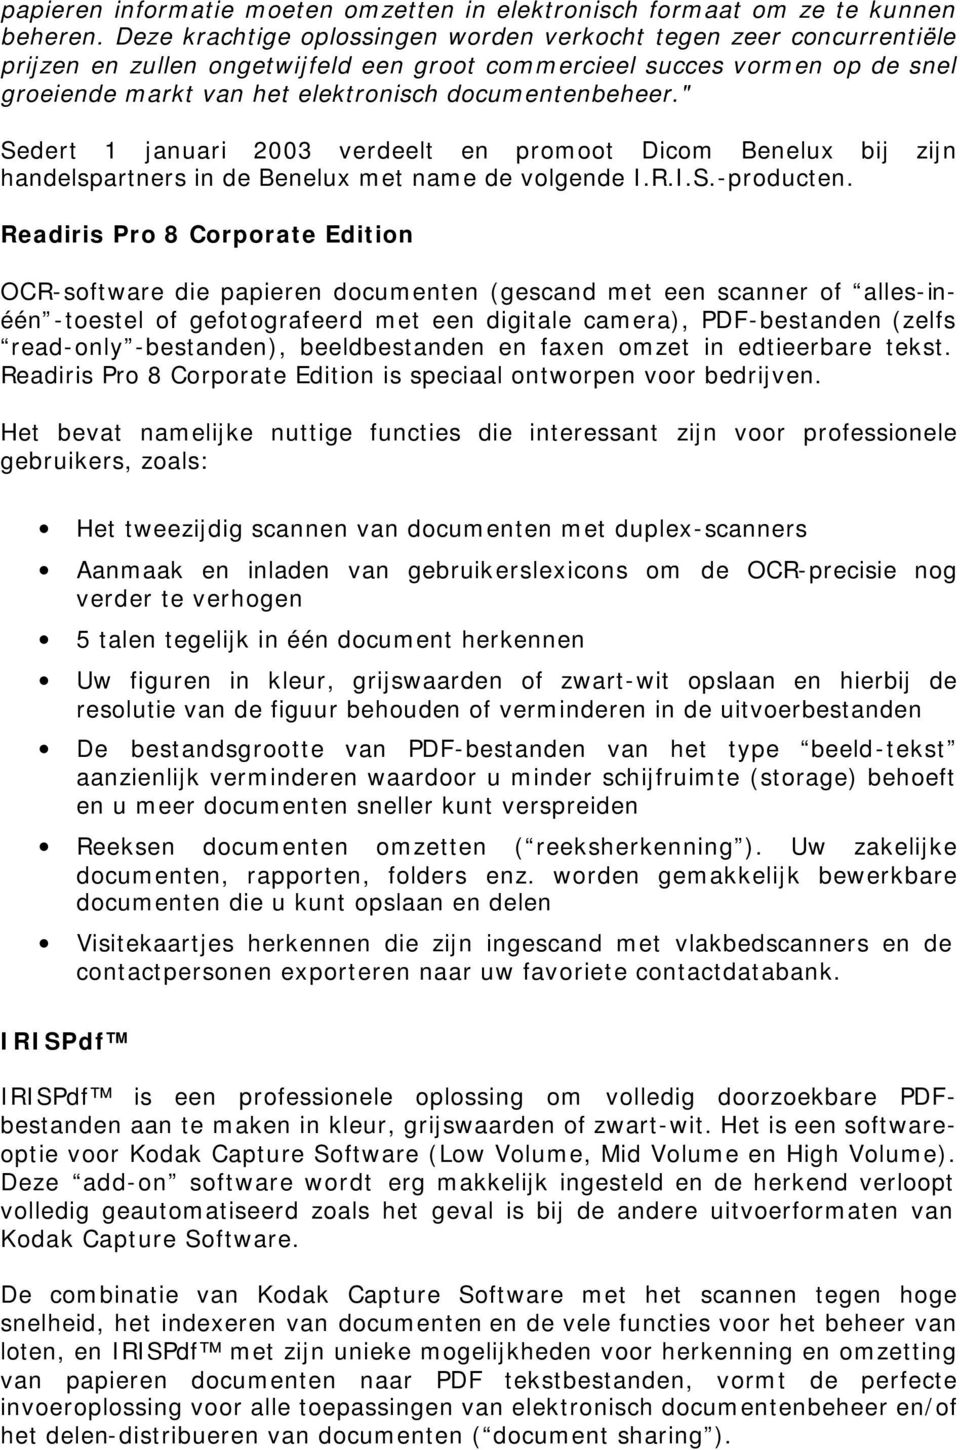 documentenbeheer." Sedert 1 januari 2003 verdeelt en promoot Dicom Benelux bij zijn handelspartners in de Benelux met name de volgende I.R.I.S.-producten.